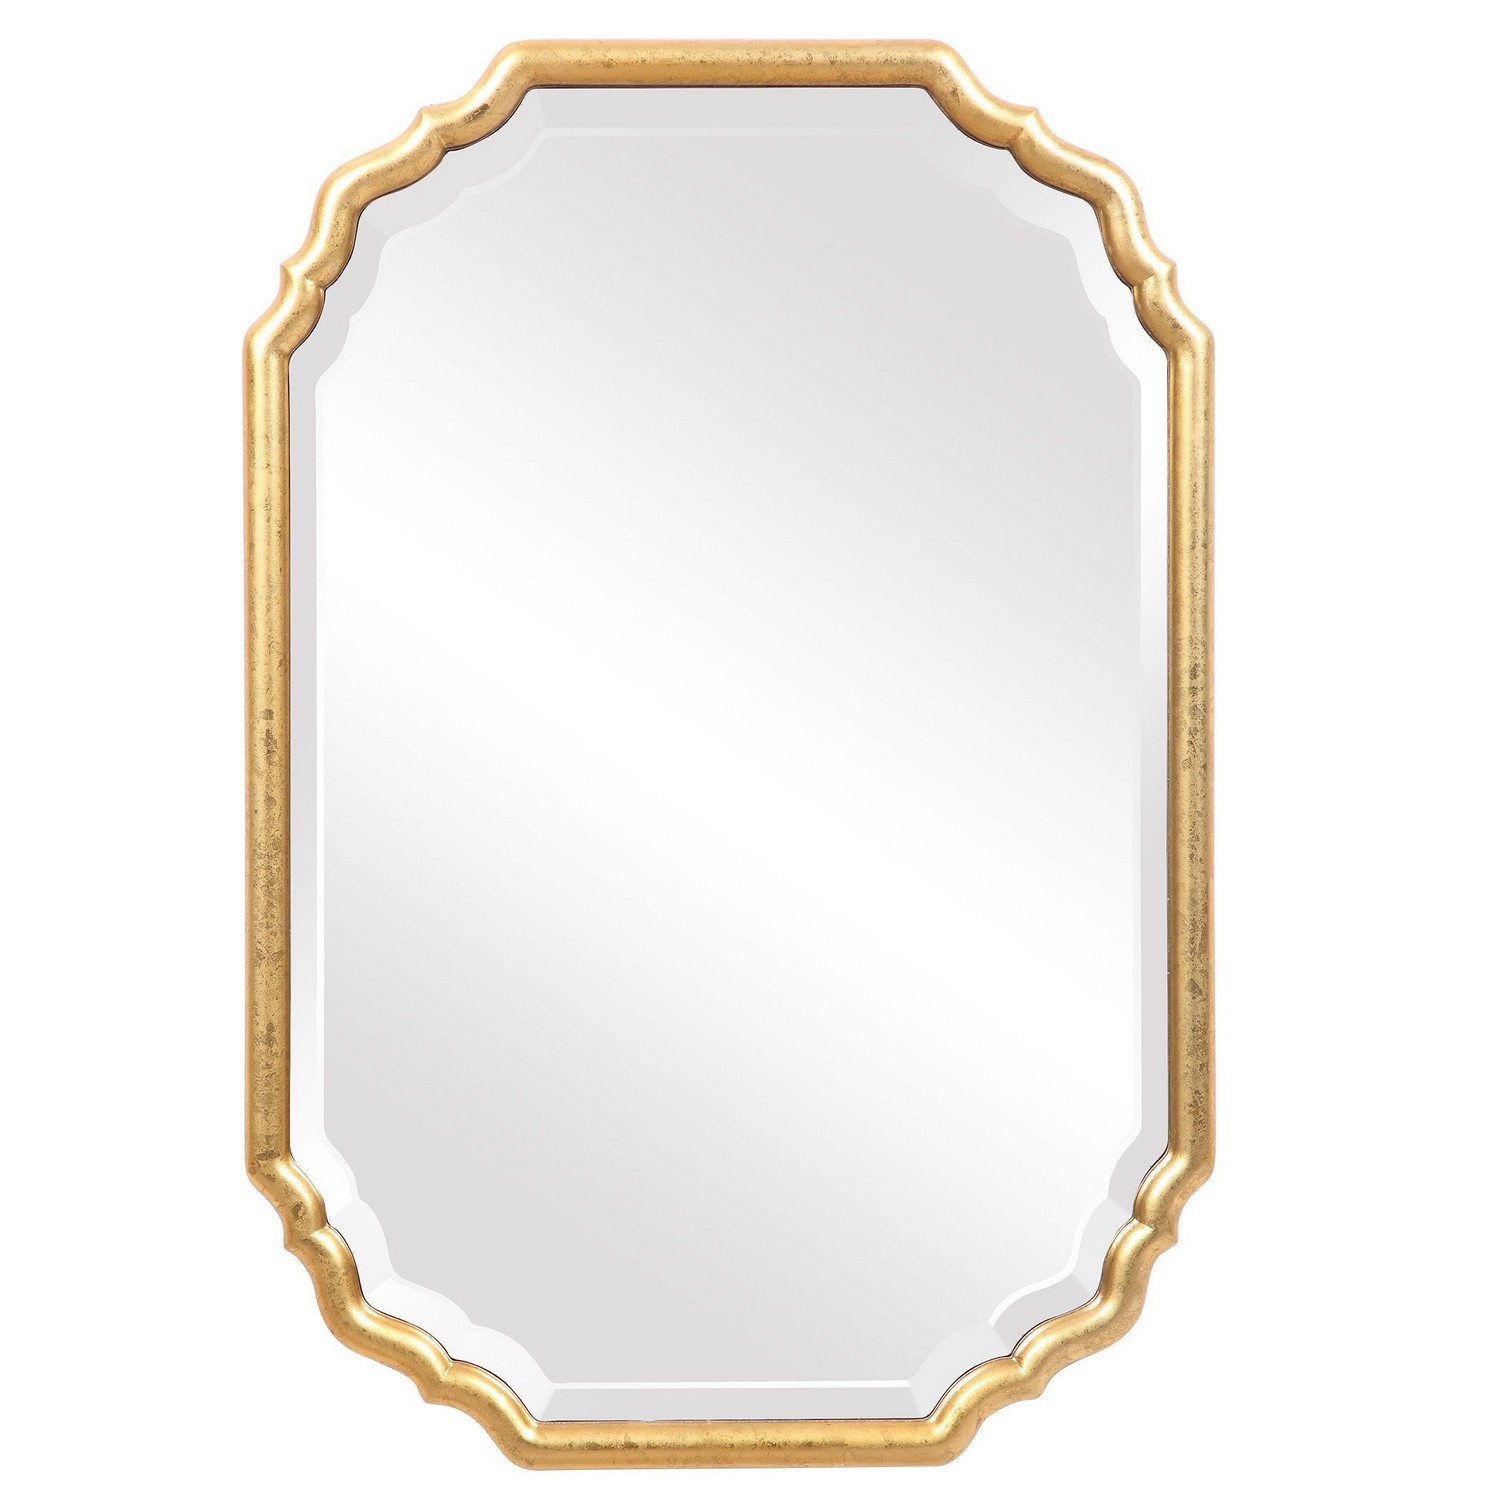 Uttermost W00483 Mirror - Antique Metallic Gold